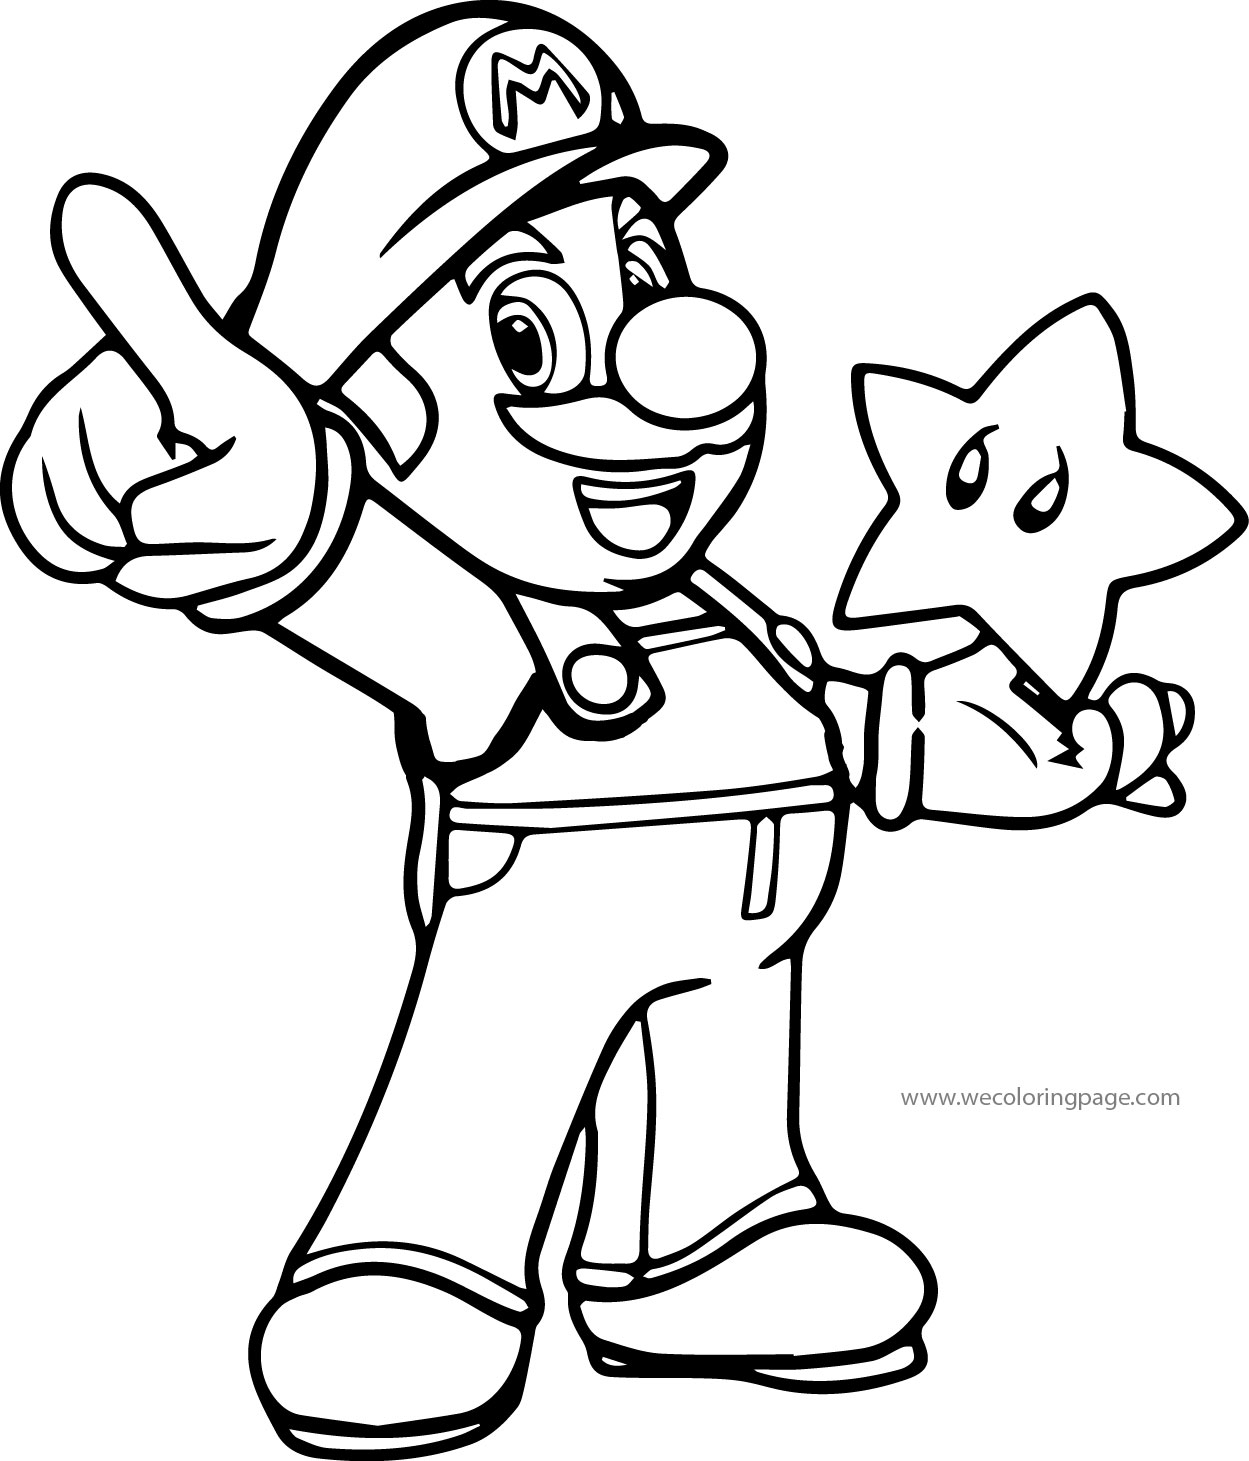 Super Mario Coloring Page | Wecoloringpage